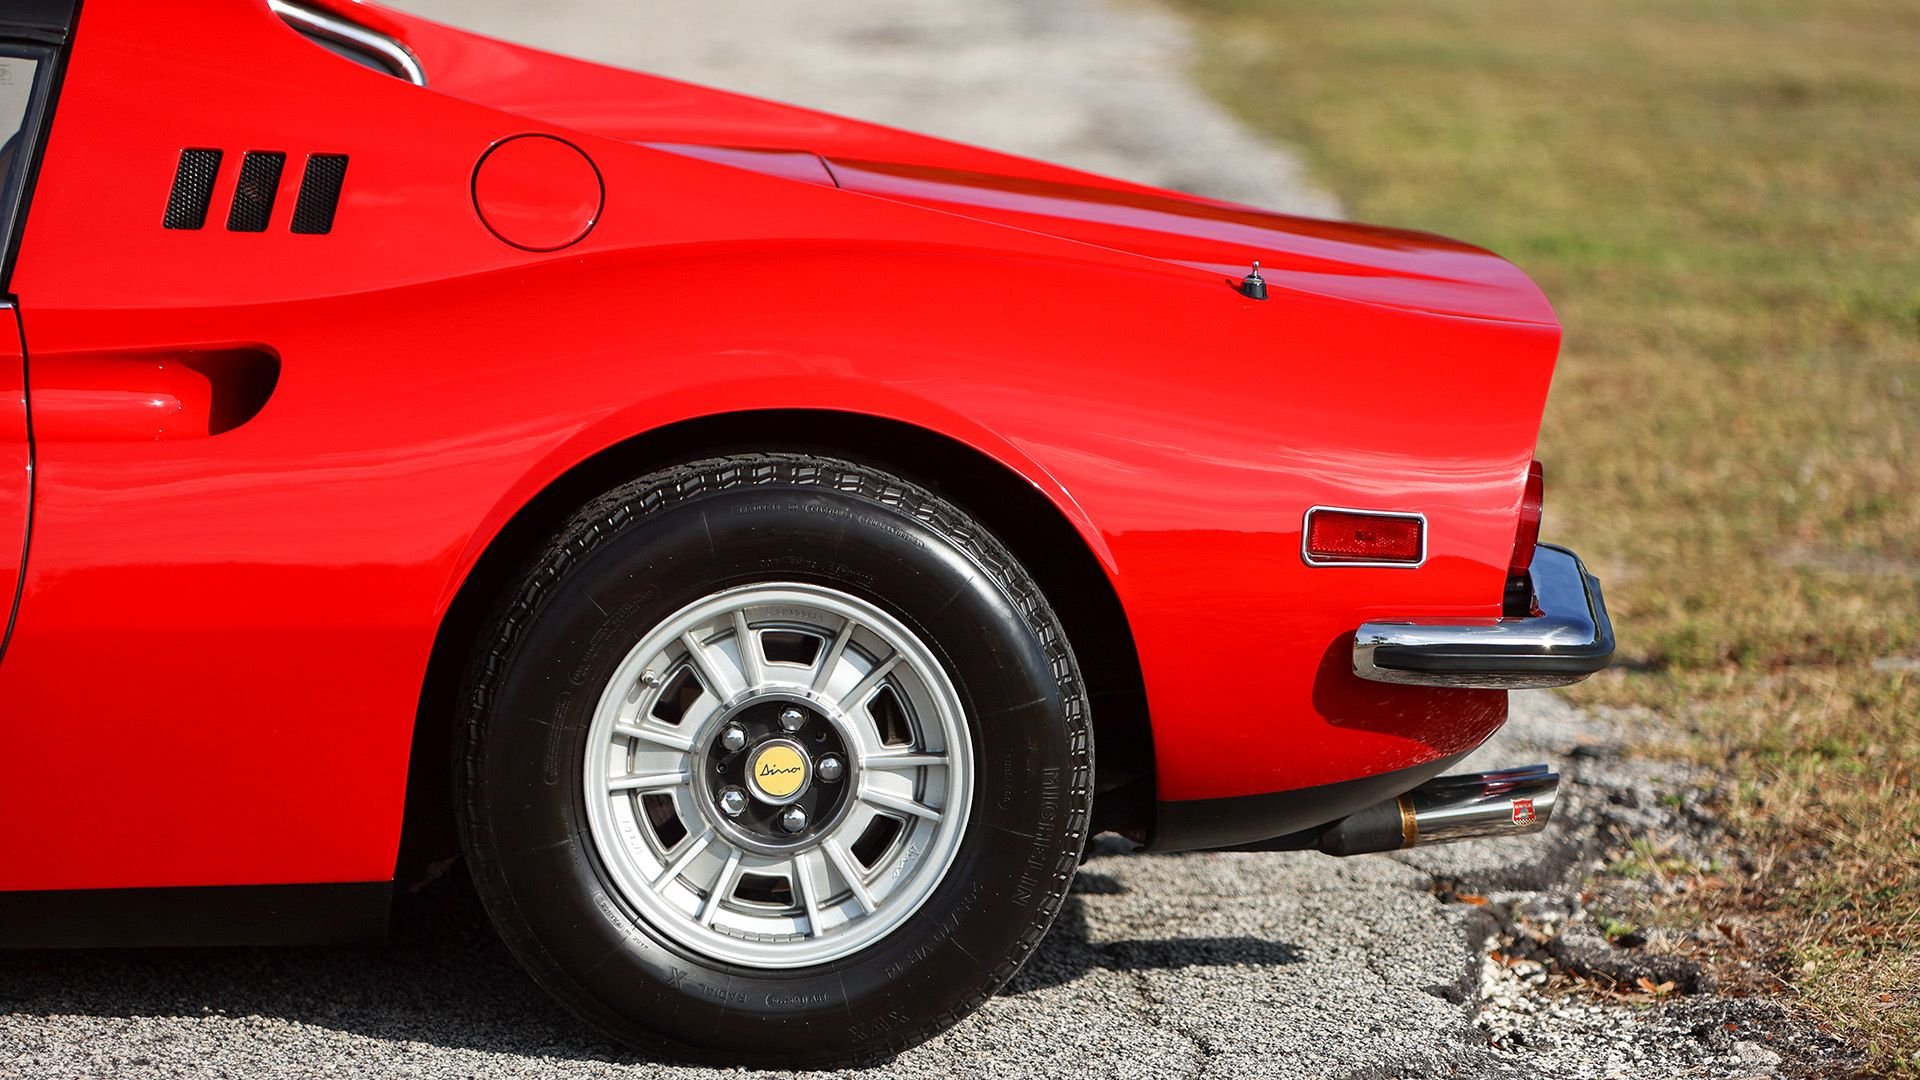 For Sale 1974 Ferrari Dino 246 GTS